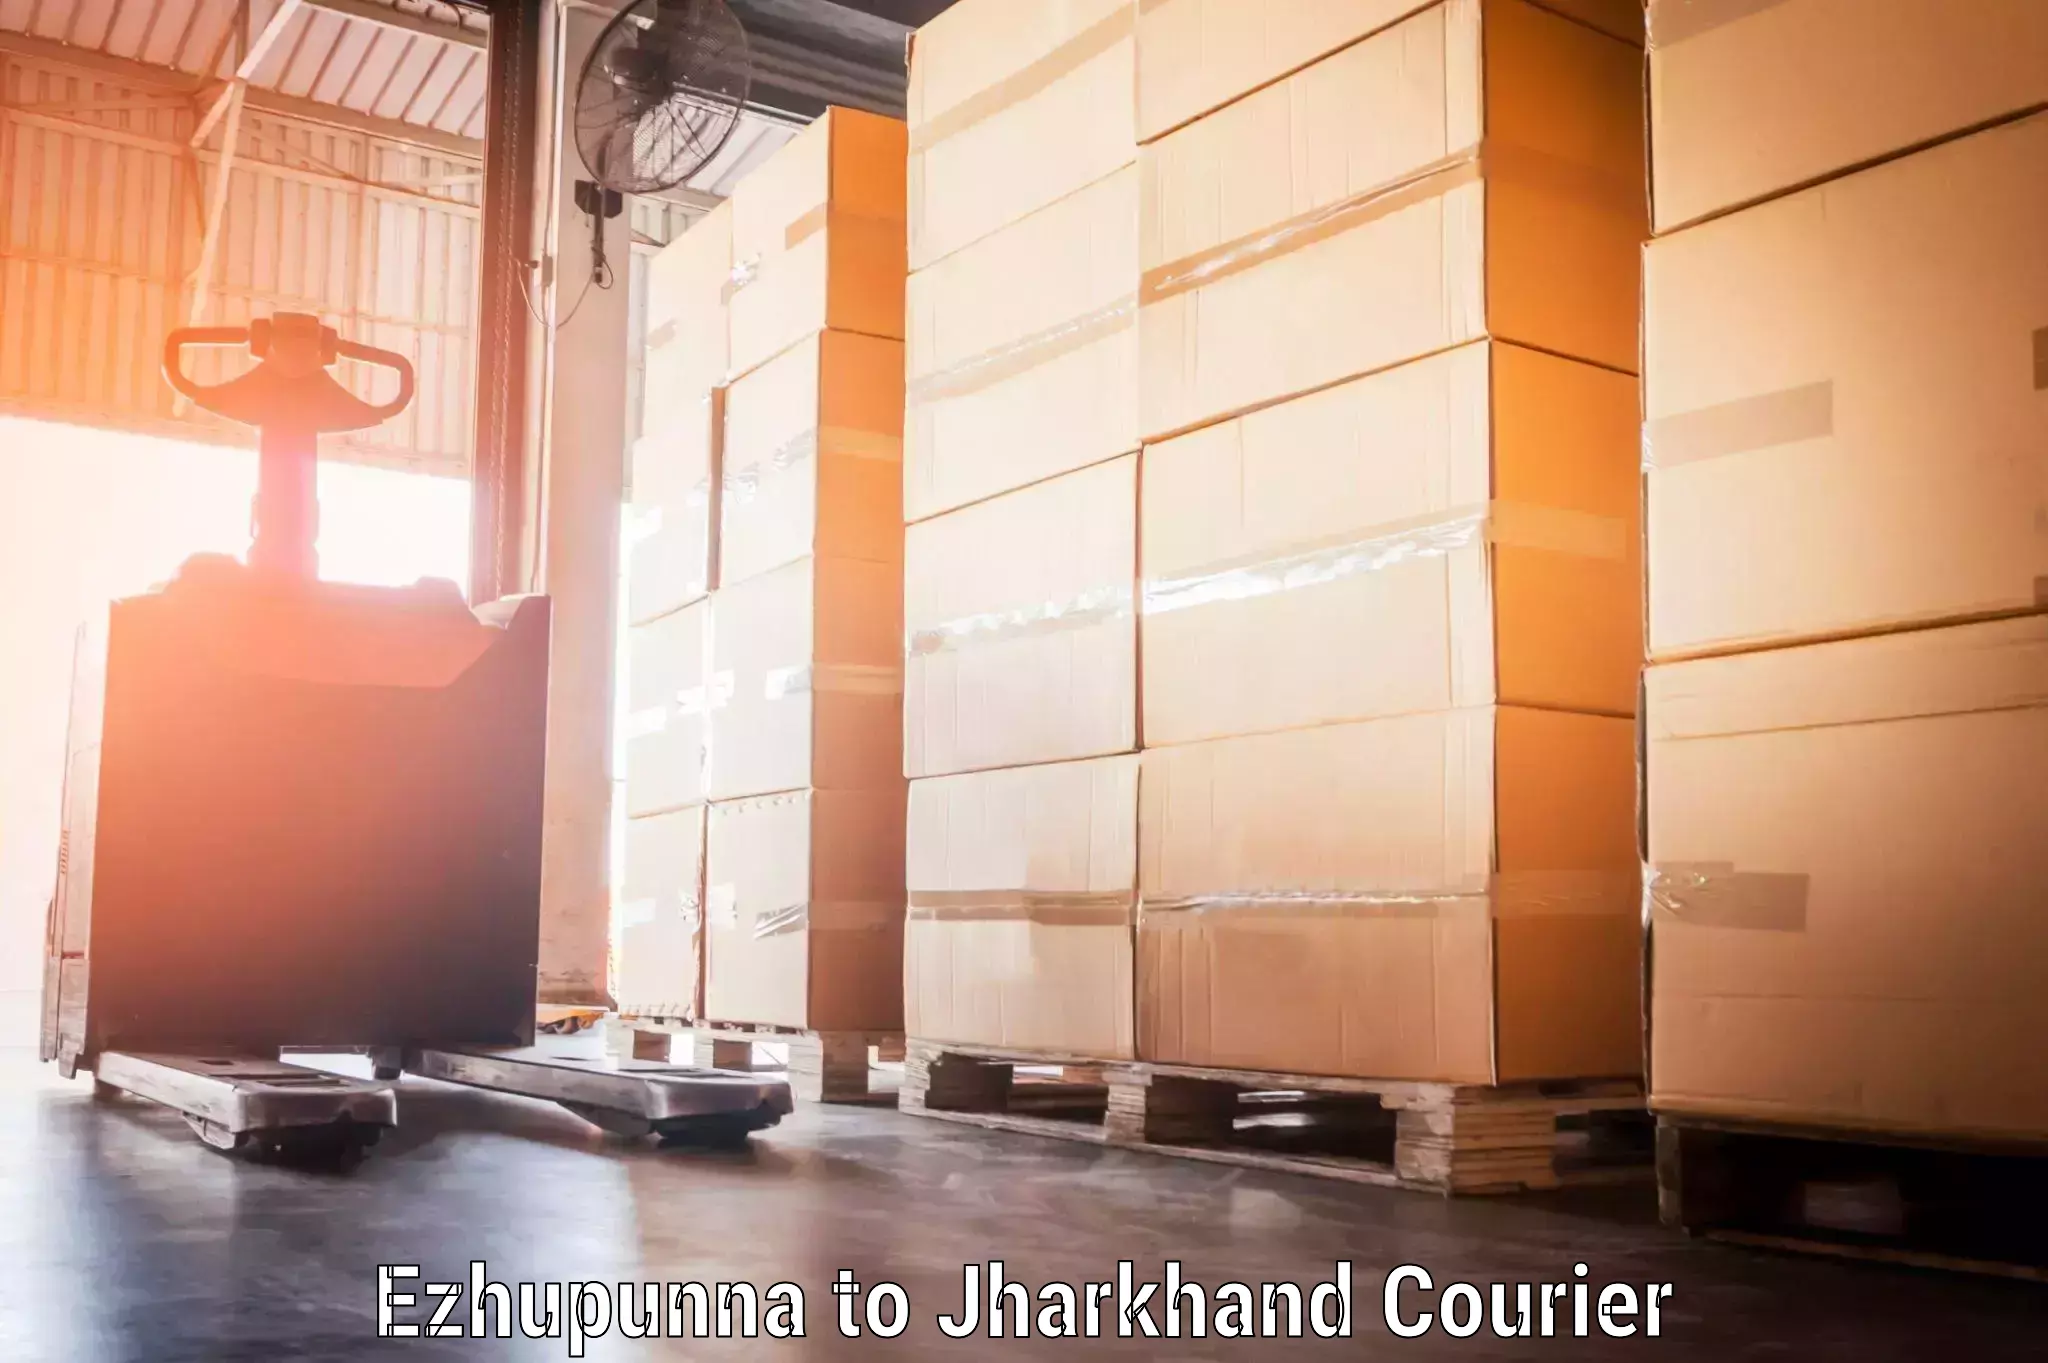 Door-to-door baggage service Ezhupunna to Dhanbad